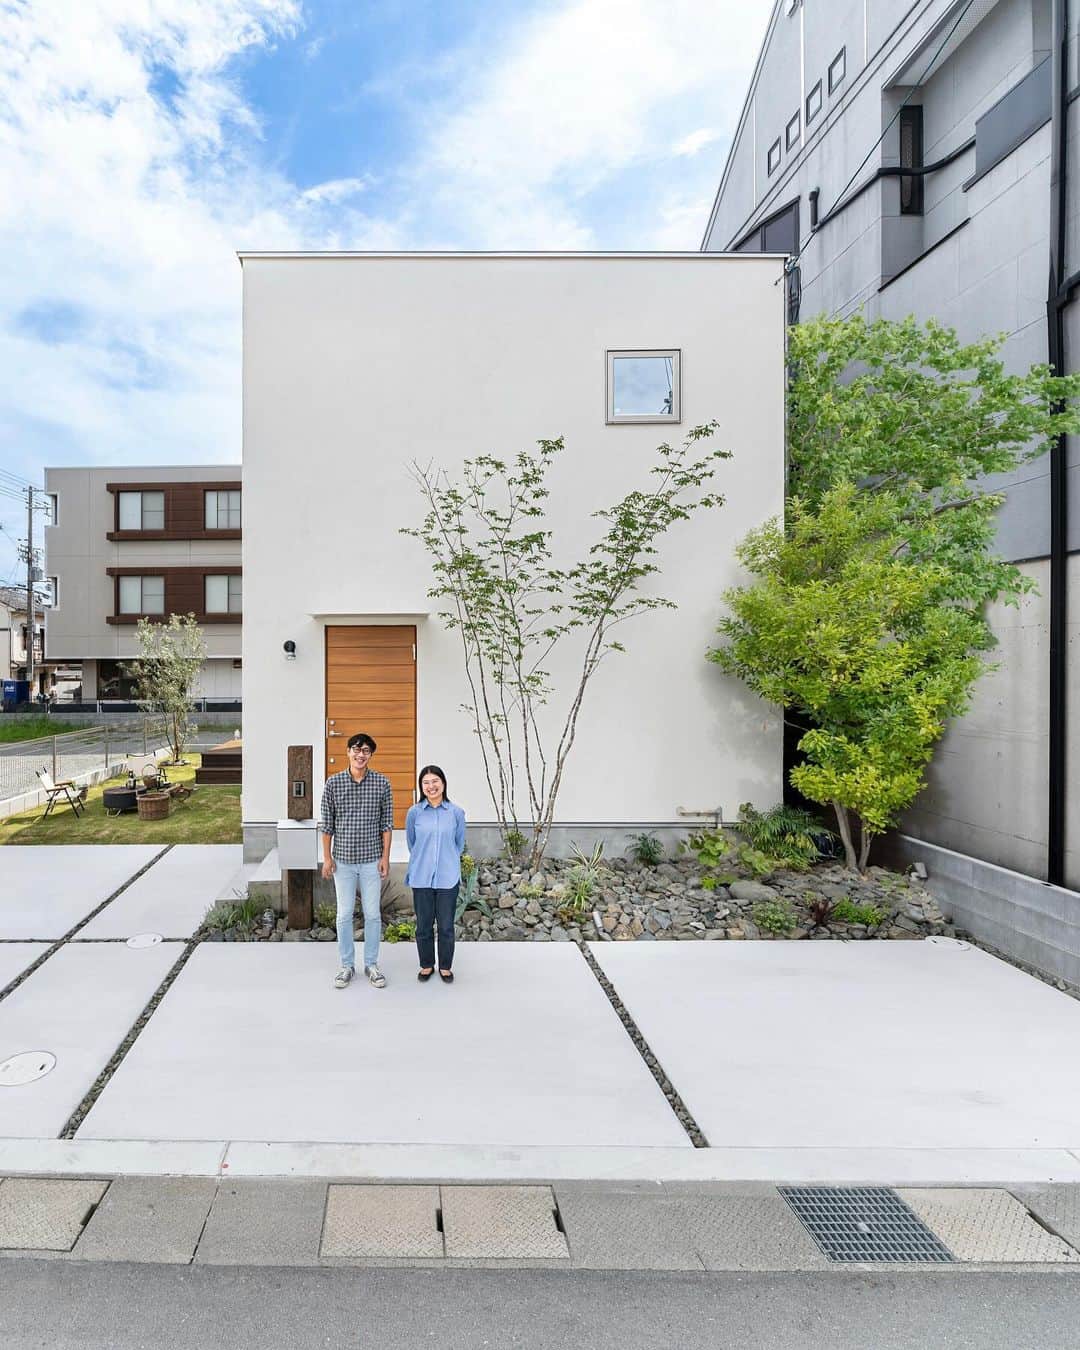 D'S STYLEのインスタグラム：「. 兵庫県　姫路市に  姫路 Funpモデルハウスが 誕生しました。 . コンセプトはアウトドアもインドアも 自由に暮らしをタノシムモデルハウス  2つの子ども部屋と寝室で 程よいプライベート感を確保しつつも 開放感たっぷりの光を感じられる家。  シンプルでベーシックな家具で 実際の生活イメージがしやすいスタイルに コーディネートしました。 .  家をおしゃれに住みこなそう そう着こなしと同じように ———————— ☞ more… @dsstyle ———————— https://www.d-s-style.com . 🍟D’S STYLEのサブアカウント ーオーナーの住みこなし紹介ー こちら☞@ds_picks . 🚪青葉台モデルハウス特設アカウント ☞  @dsstyle_aobadai_ ☞  @dsstyle_aobadai_funp . 🚪豊中モデルハウス特設アカウント ☞  @dsstyle_toyonaka . ☞  @dsstyle_toyonaka_funp . 🚪加古川モデルハウス特設アカウント ☞  @dsstyle_kakogawa  ☞  @dsstyle_kakogawa.funp . 🚪愛知 CBCモデルハウス特設アカウント ☞  @dsstyle_aichi_cbc ☞  @dsstyle_aichi_cbc_funp  . 🌵D’S STYLEのLINE公式アカウント こちら☞ @dsstyle_line . #dsstyle #ds #ディーズ #ディーズスタイル #新築一戸建て #こだわりの家 #家づくり #土間のある家 #塗り壁 #暮らしを楽しむ家づくり #塗り壁の家 #無垢床の家 #家を建てる #住まい #個性的な家 #土間のある暮らし #空 #外観 #植栽 #外観デザイン #外構デザイン #モデルハウス」